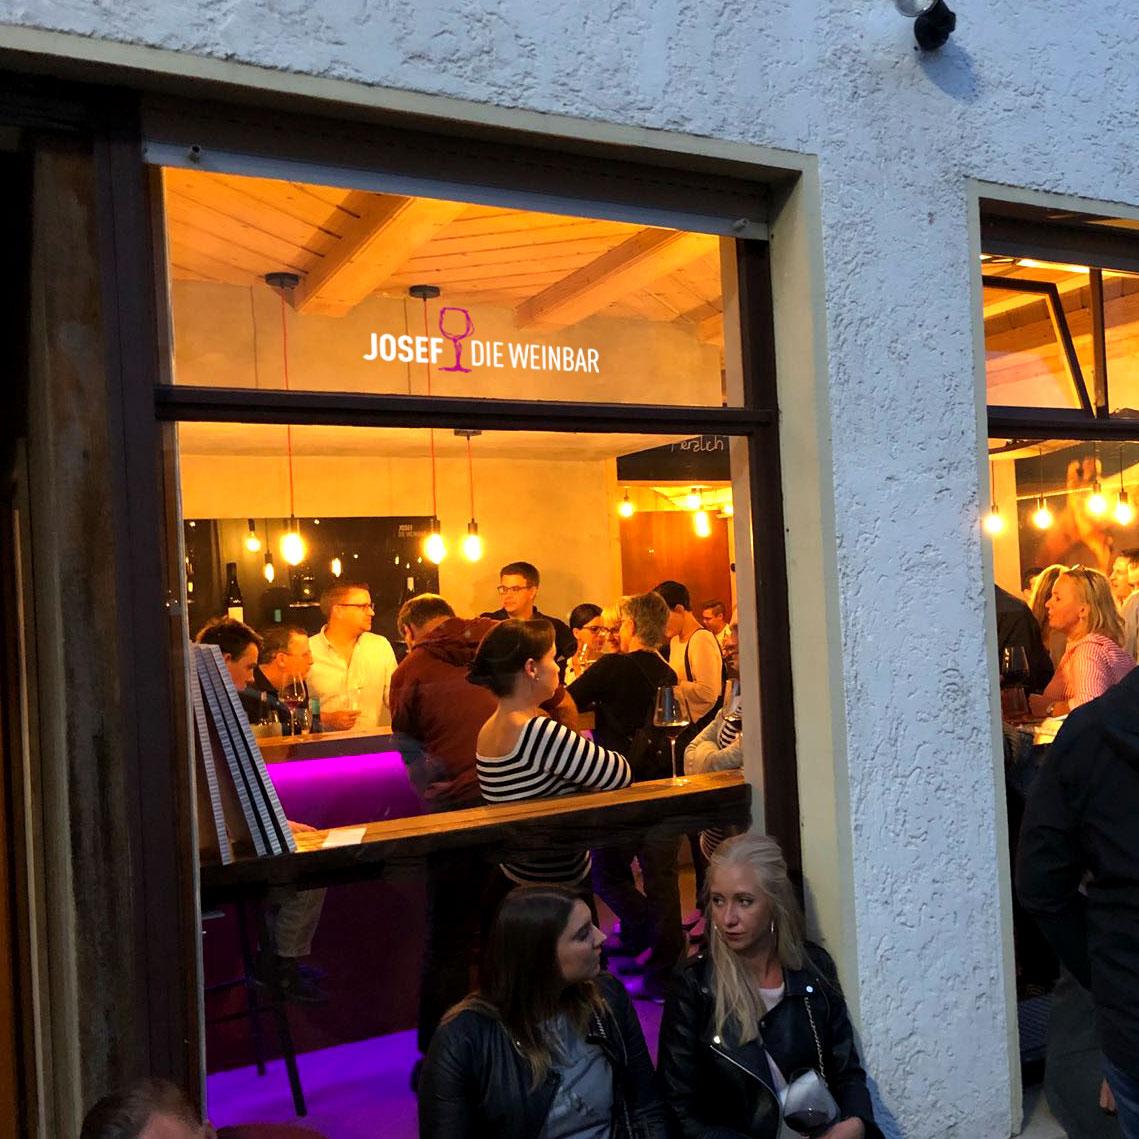 Restaurant "JOSEF – DIE WEINBAR in Lauda" in Lauda-Königshofen